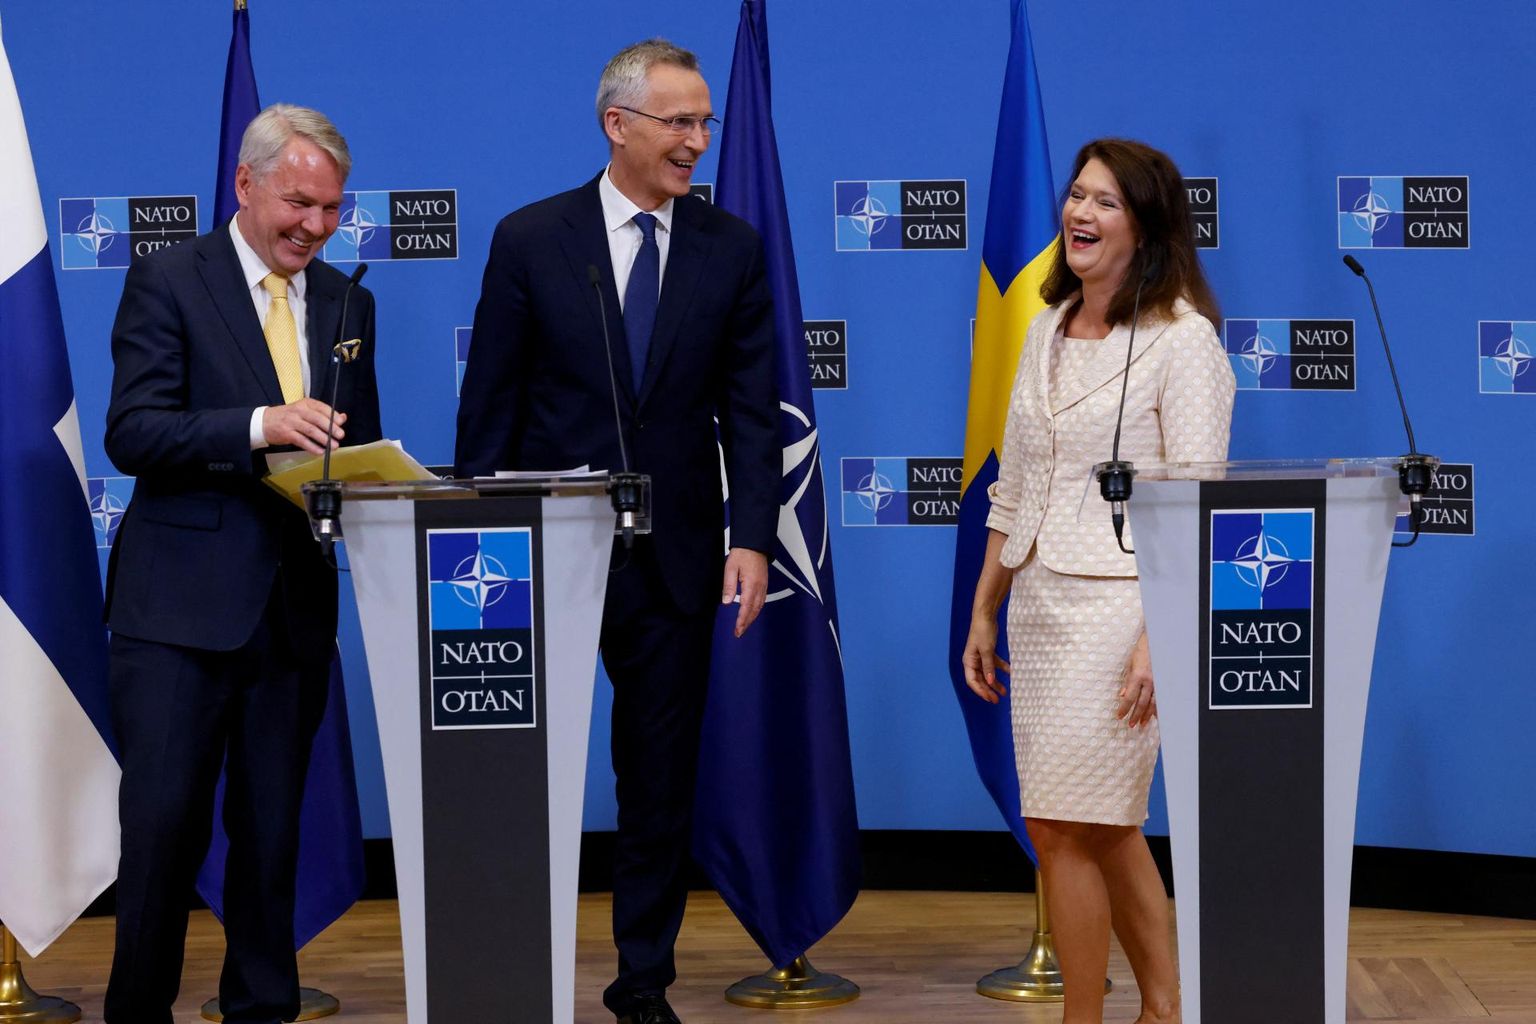 Eile NATOga liitumise protokolli allkirjastamise järel peetud pressikonverentsil olid ühtmoodi rõõmsas tujus nii Soome välisminister Pekka Haavisto (vasakul), tema Rootsi ametikaaslane Ann Linde (paremal) kui ka NATO peasekretär Jens Stoltenberg (keskel).